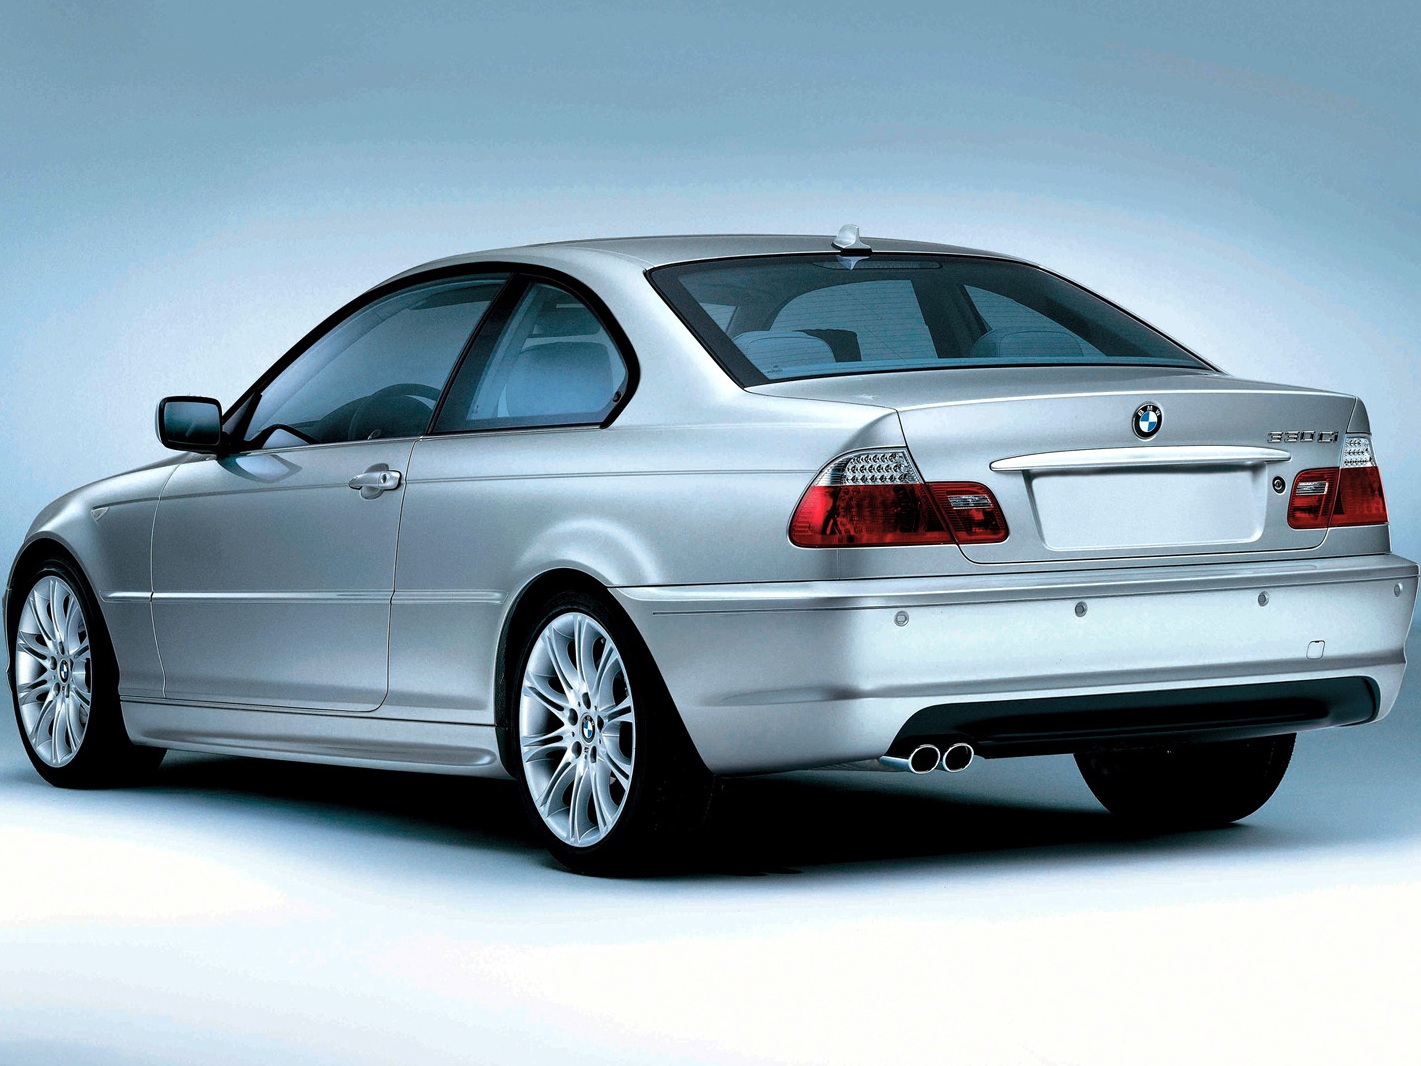 BMW e46 купе. BMW 330ci e46 Coupe. BMW e46 330 Coupe. BMW e46 Coupe 2004. Кузов е46